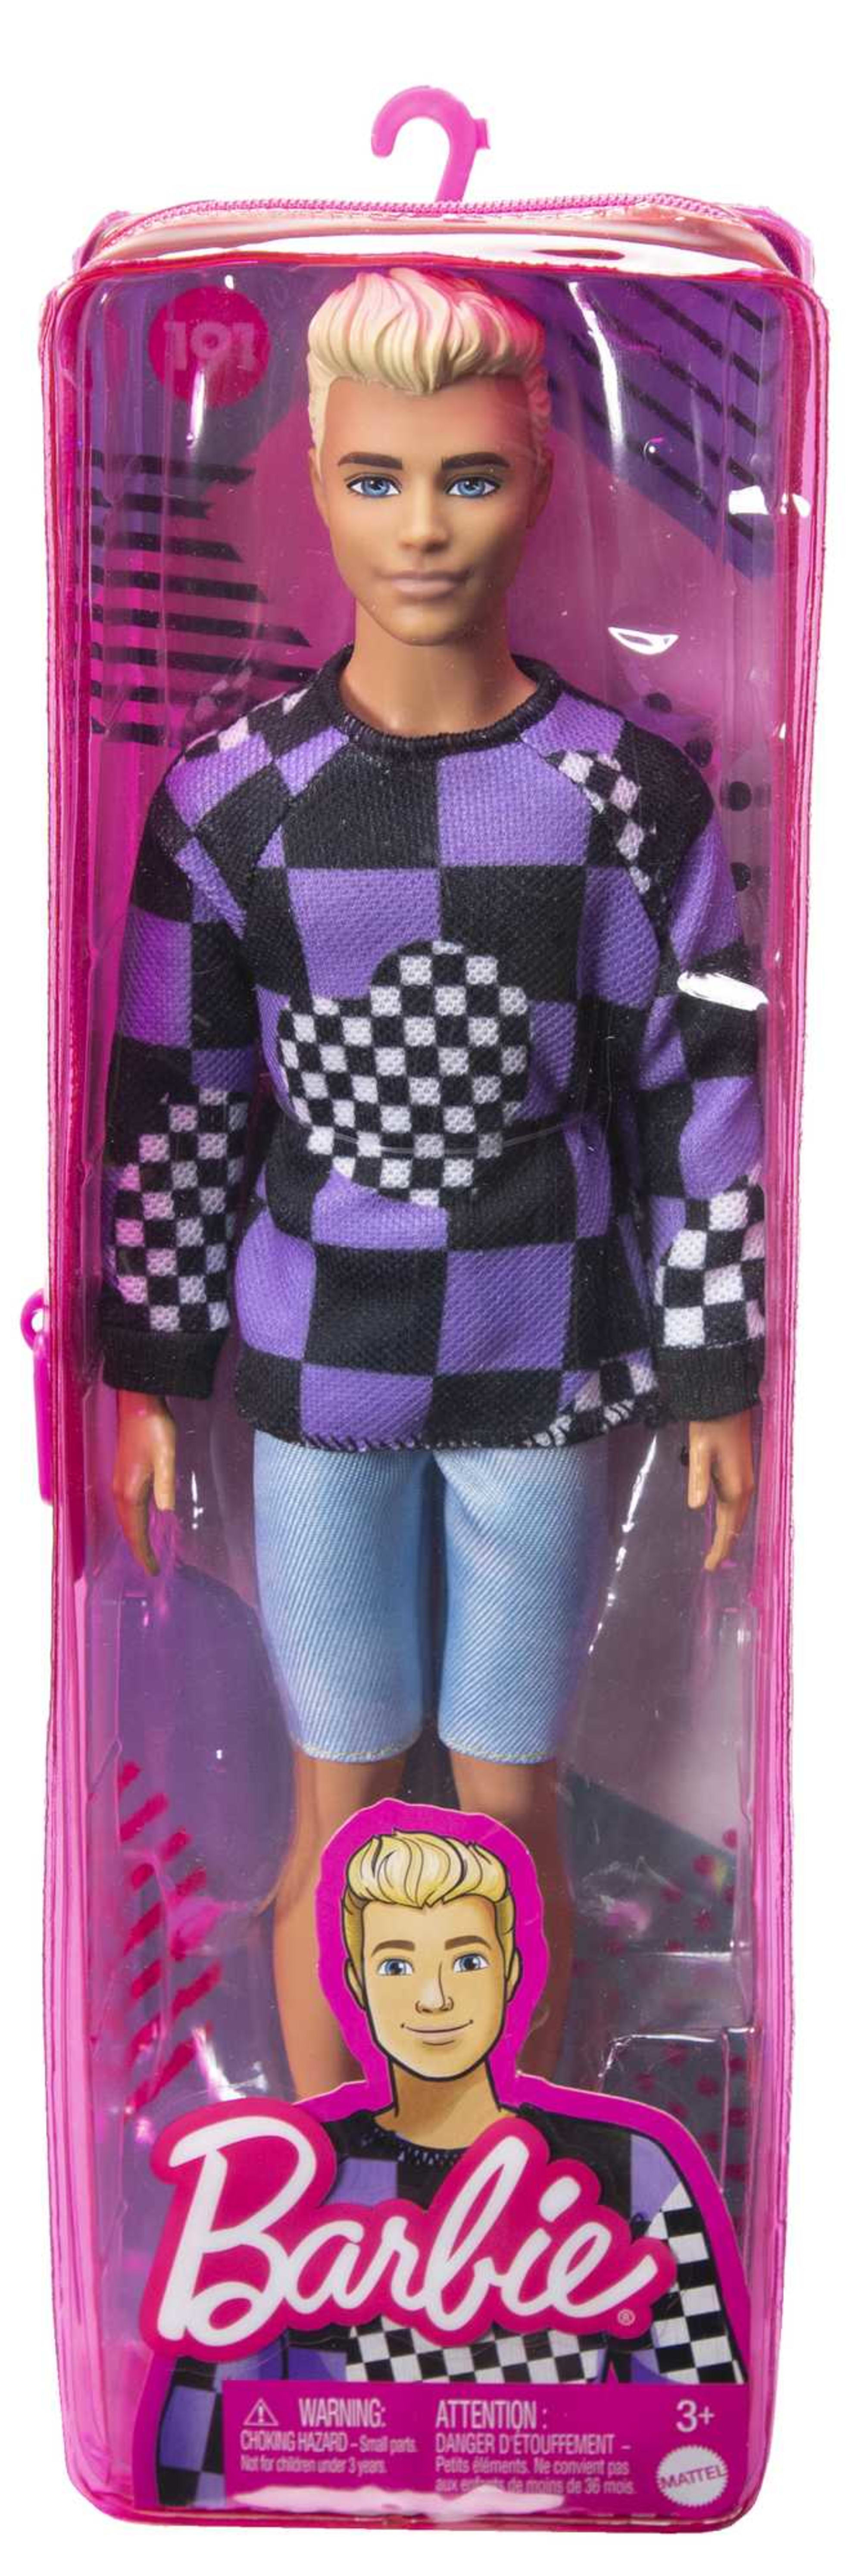 Barbie Doll Assortment | DWK44 | MATTEL